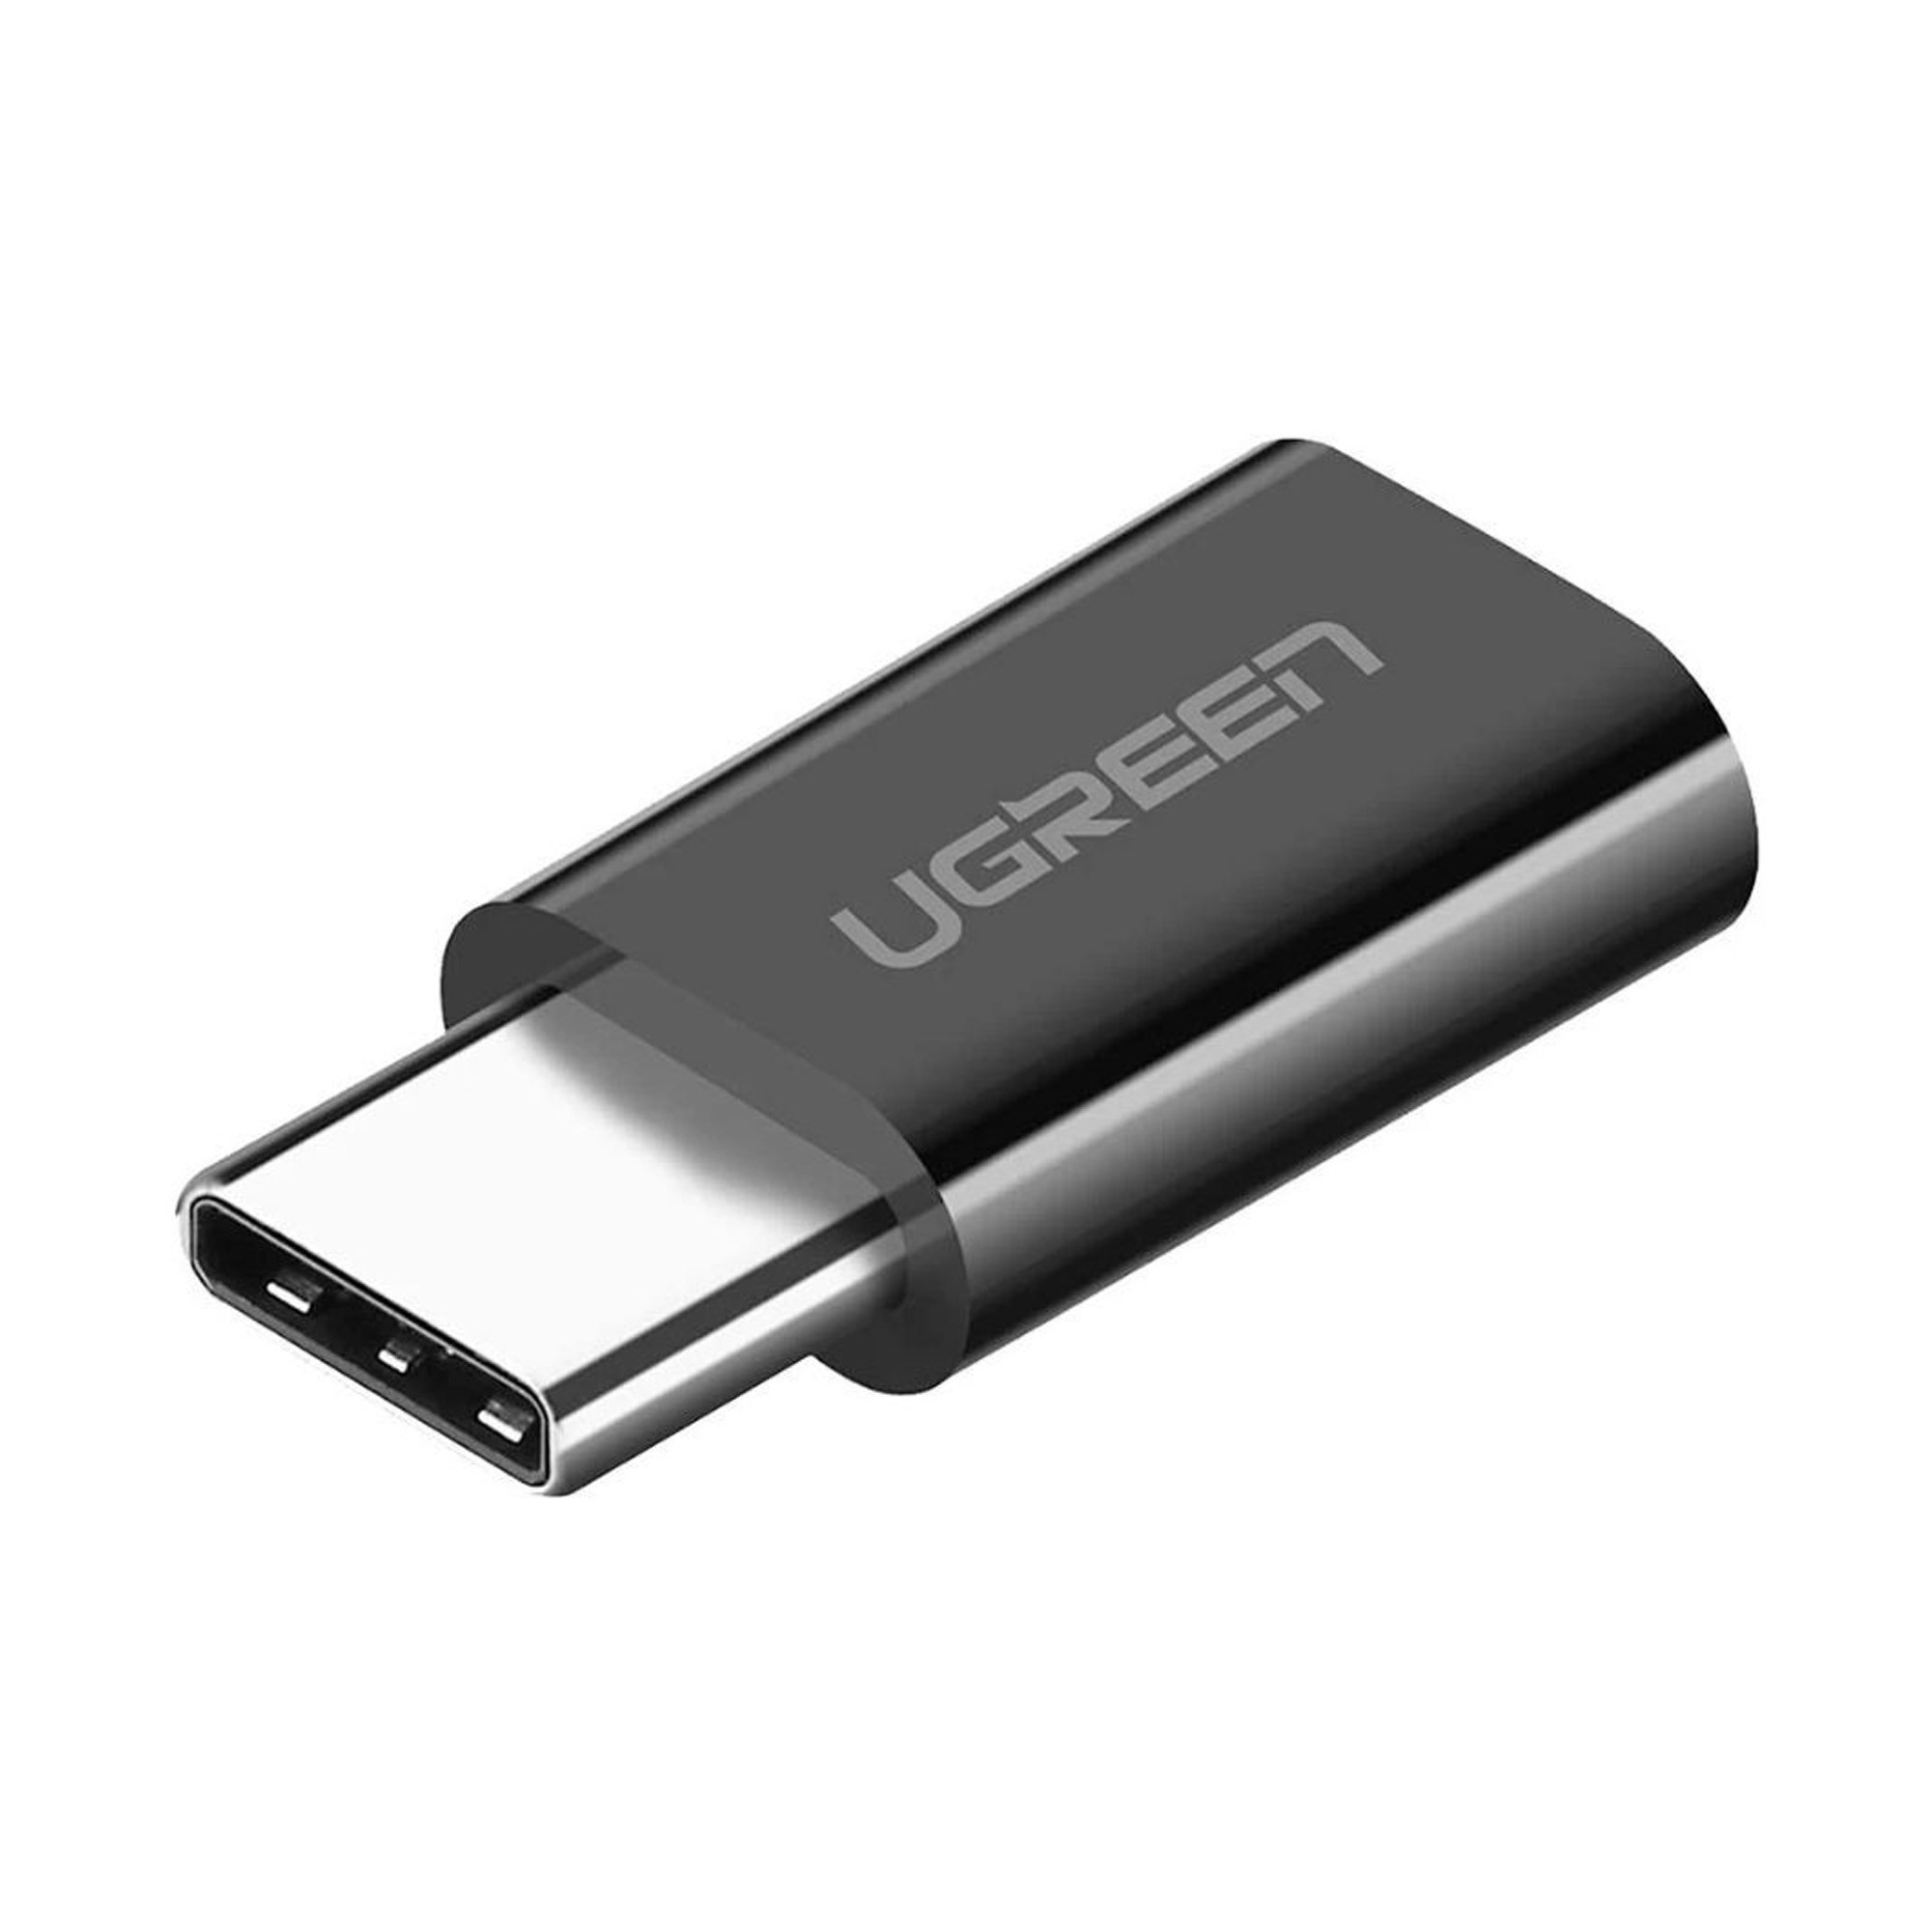 Adaptador Micro USB a USB-C mejor tu conectividad.